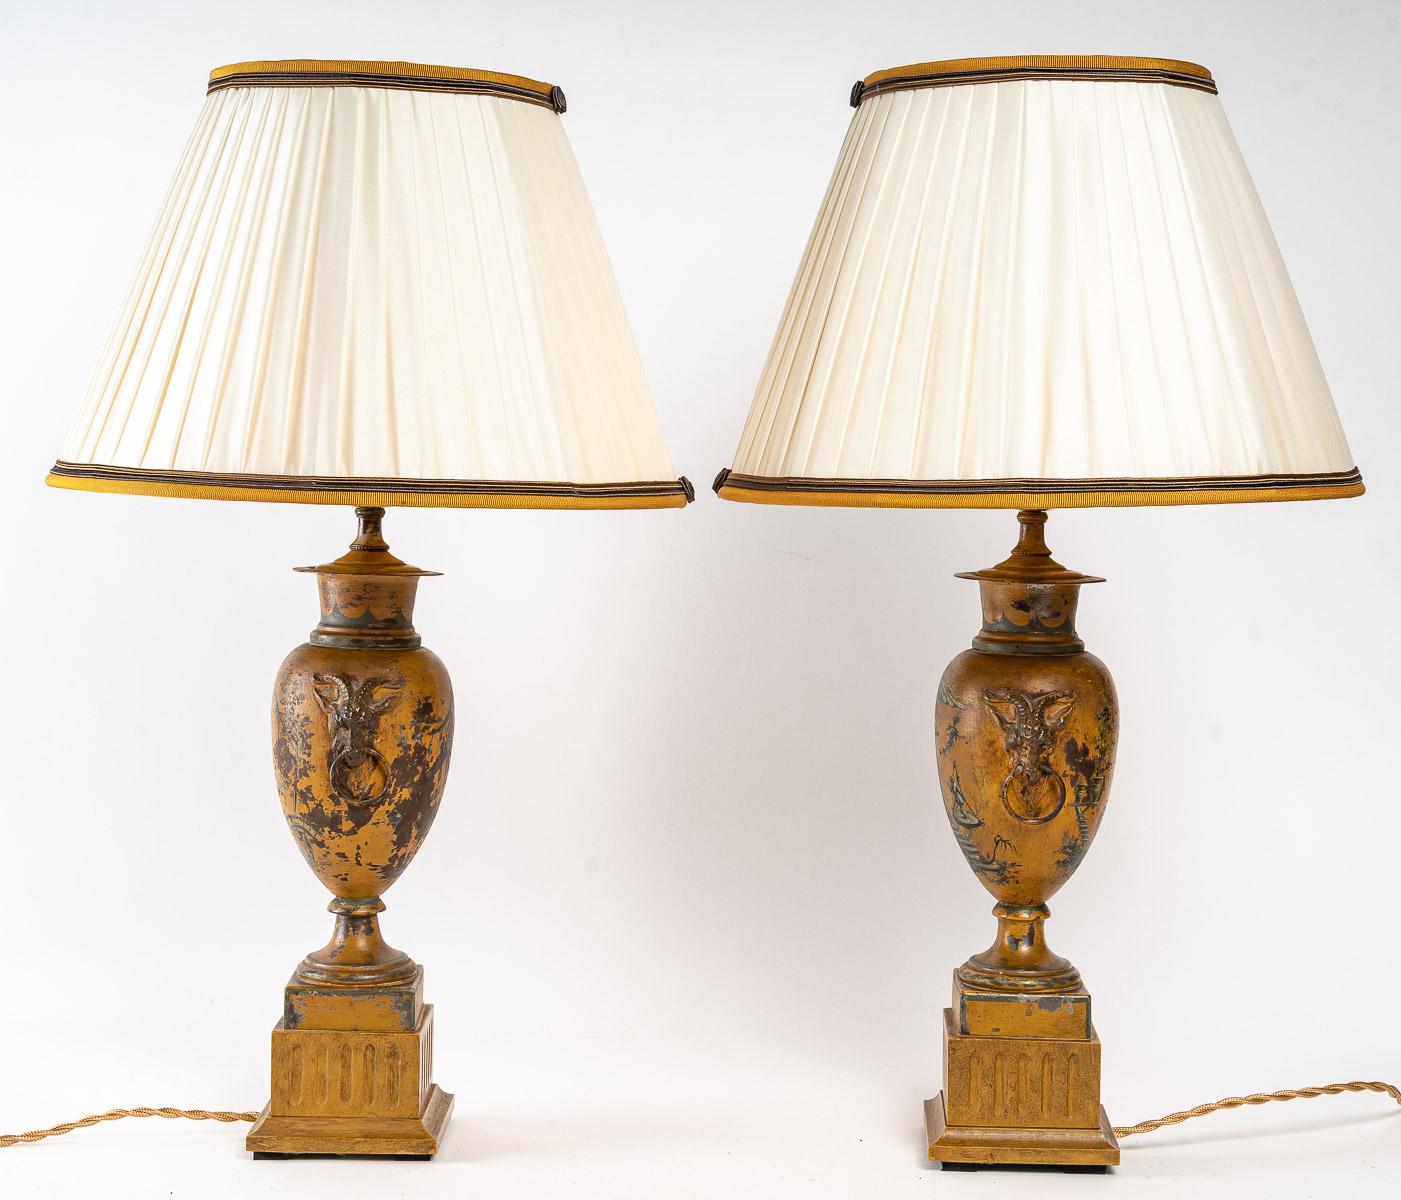 Paar Lampen aus lackiertem Blech, 19. Jahrhundert

Paar Lampen aus lackiertem Blech, 19. Jahrhundert, englisches Werk.

Maße: H: 58cm, D: 33 cm.